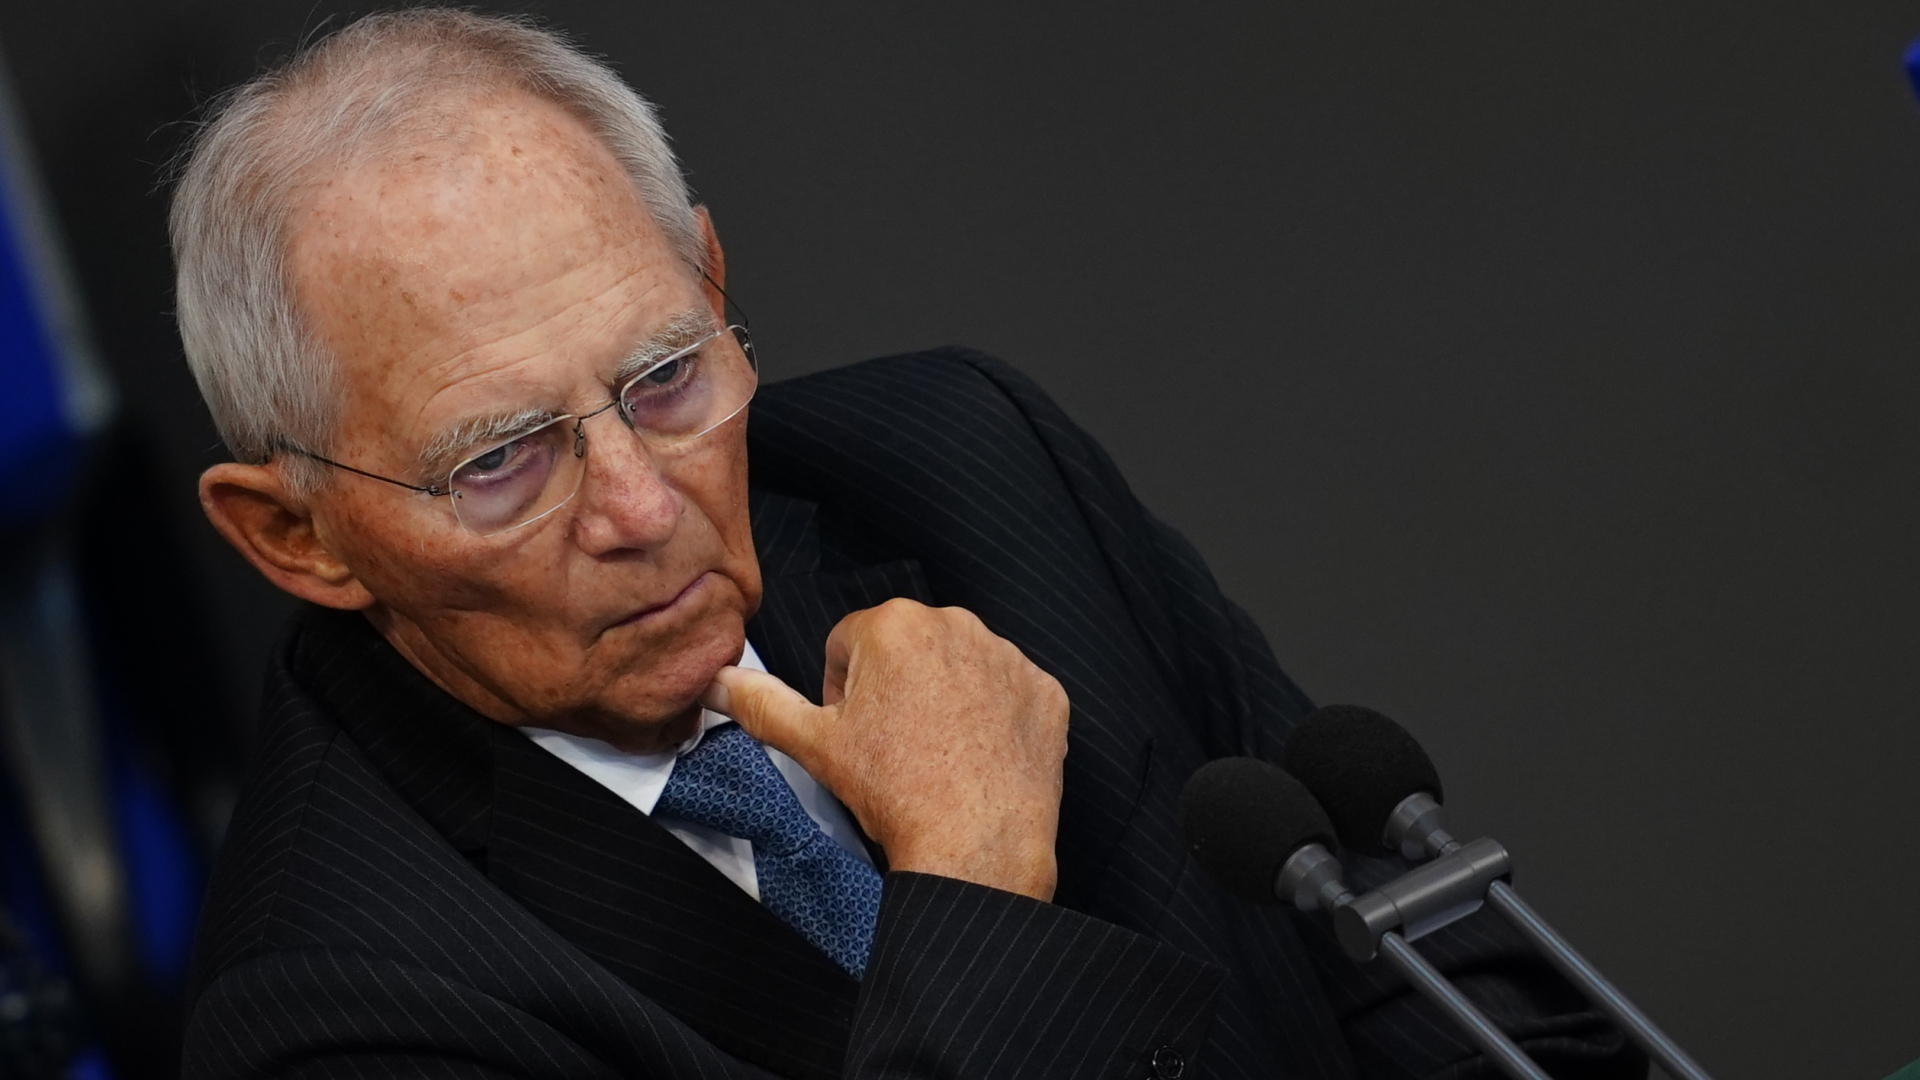 Wolfgang Schäuble | CLEMENS BILAN/EPA-EFE/Shuttersto